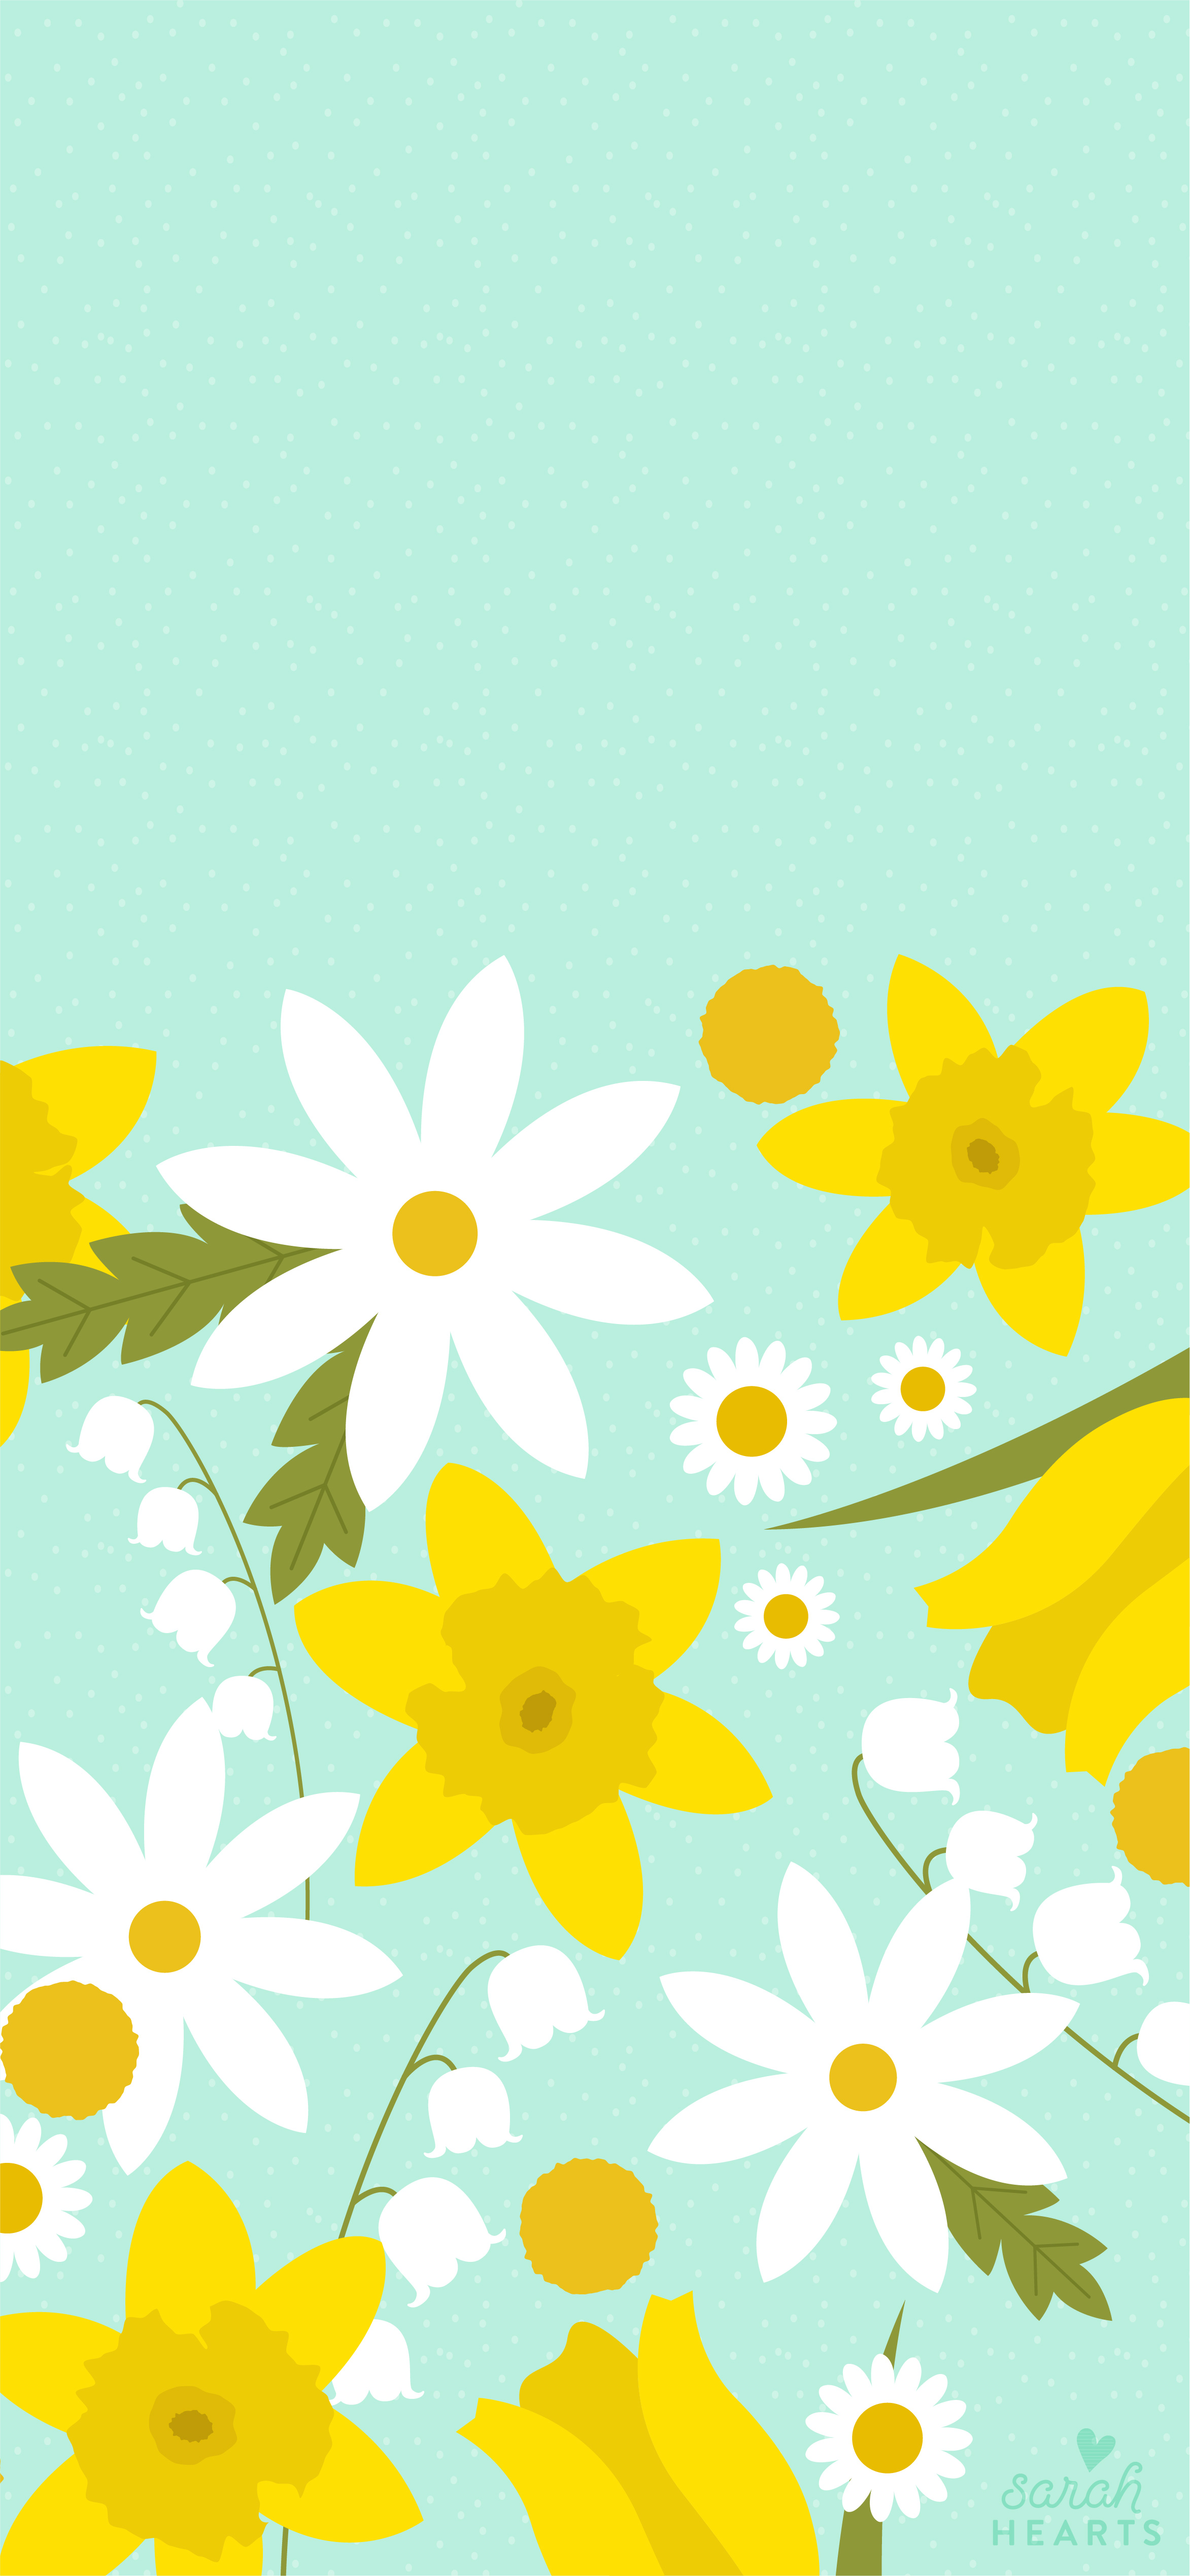 Với lịch nền hoa mùa xuân 2018, bạn sẽ có những ngày phấn khởi và tràn đầy sức sống. Hình ảnh hoa mùa xuân tươi sáng và mộc mạc sẽ mang lại cảm giác yên bình và thăng hoa cho bạn. 